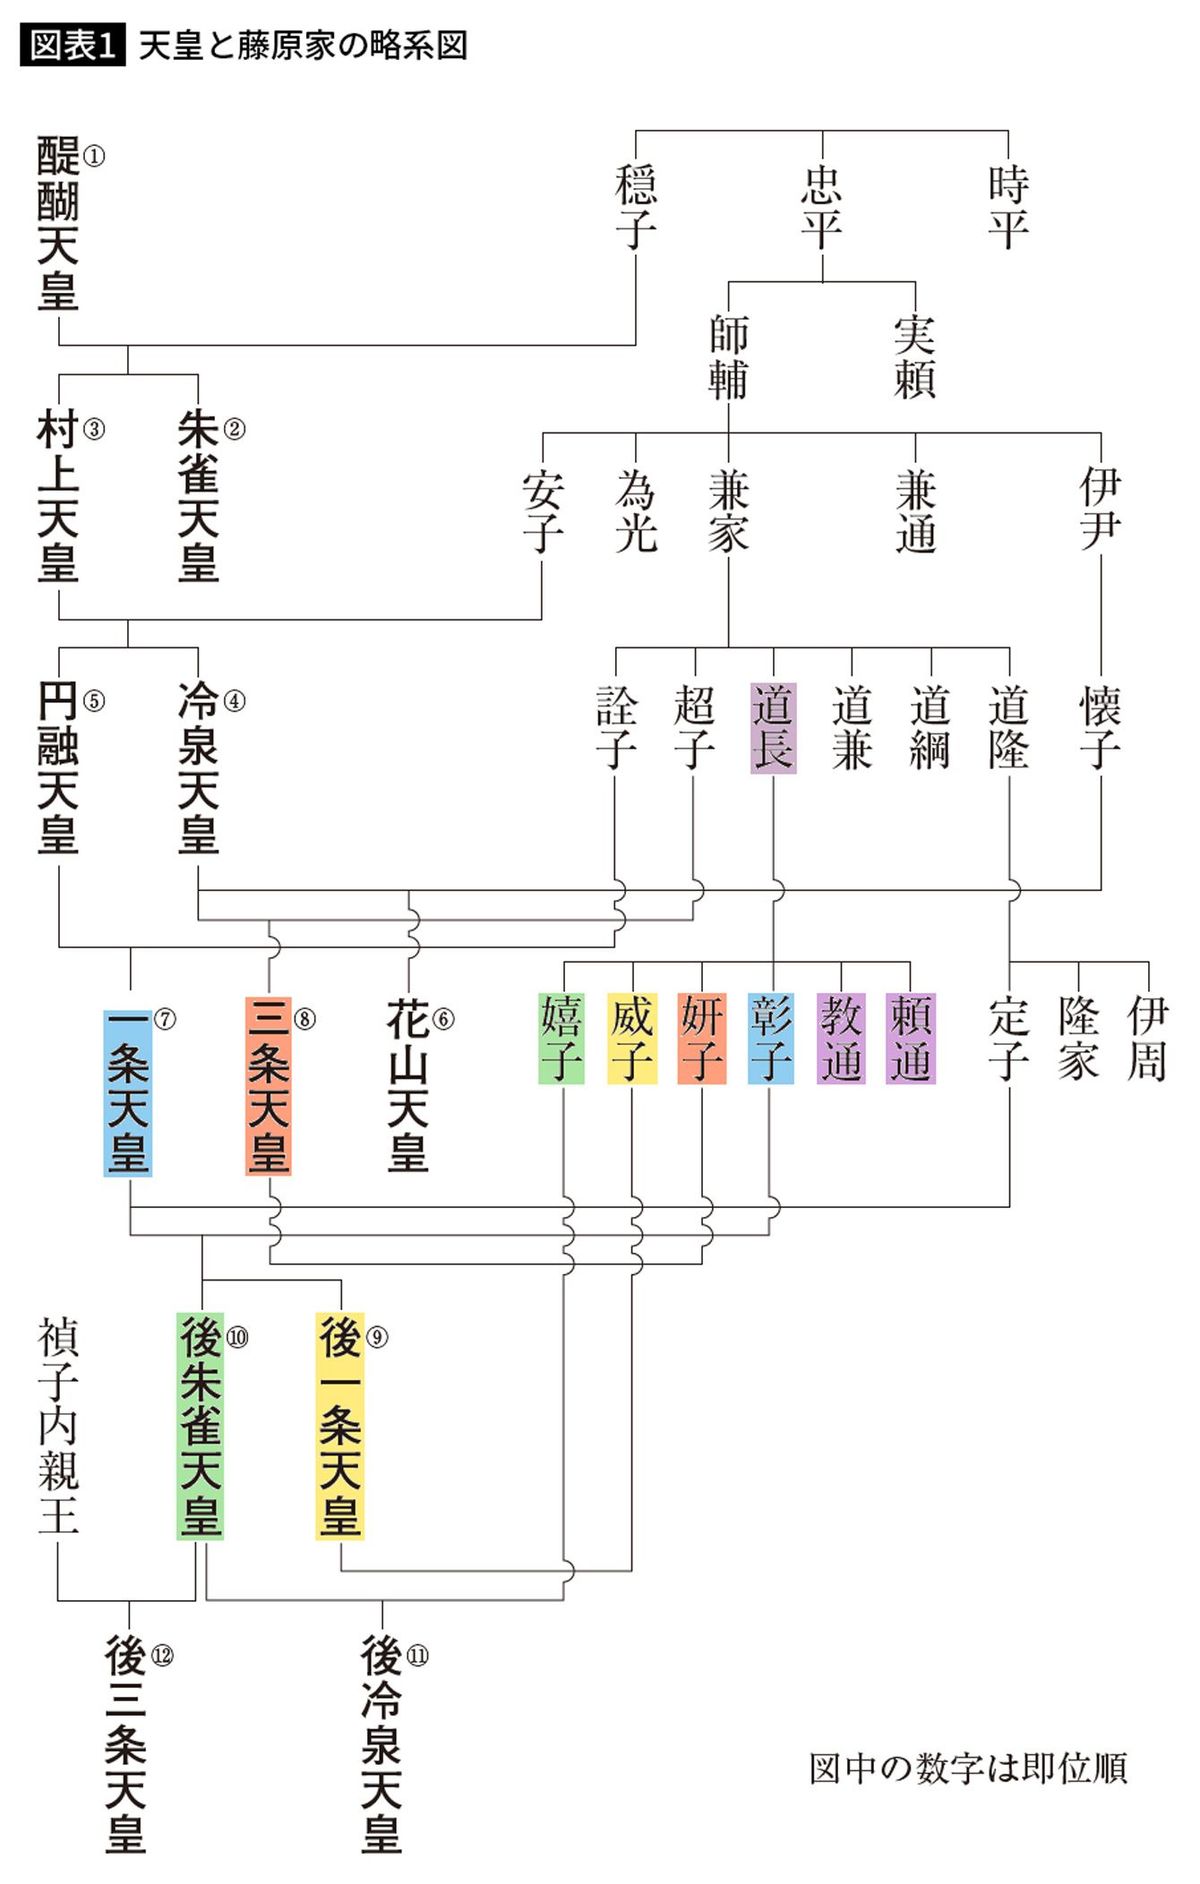 天皇と藤原家の略系図